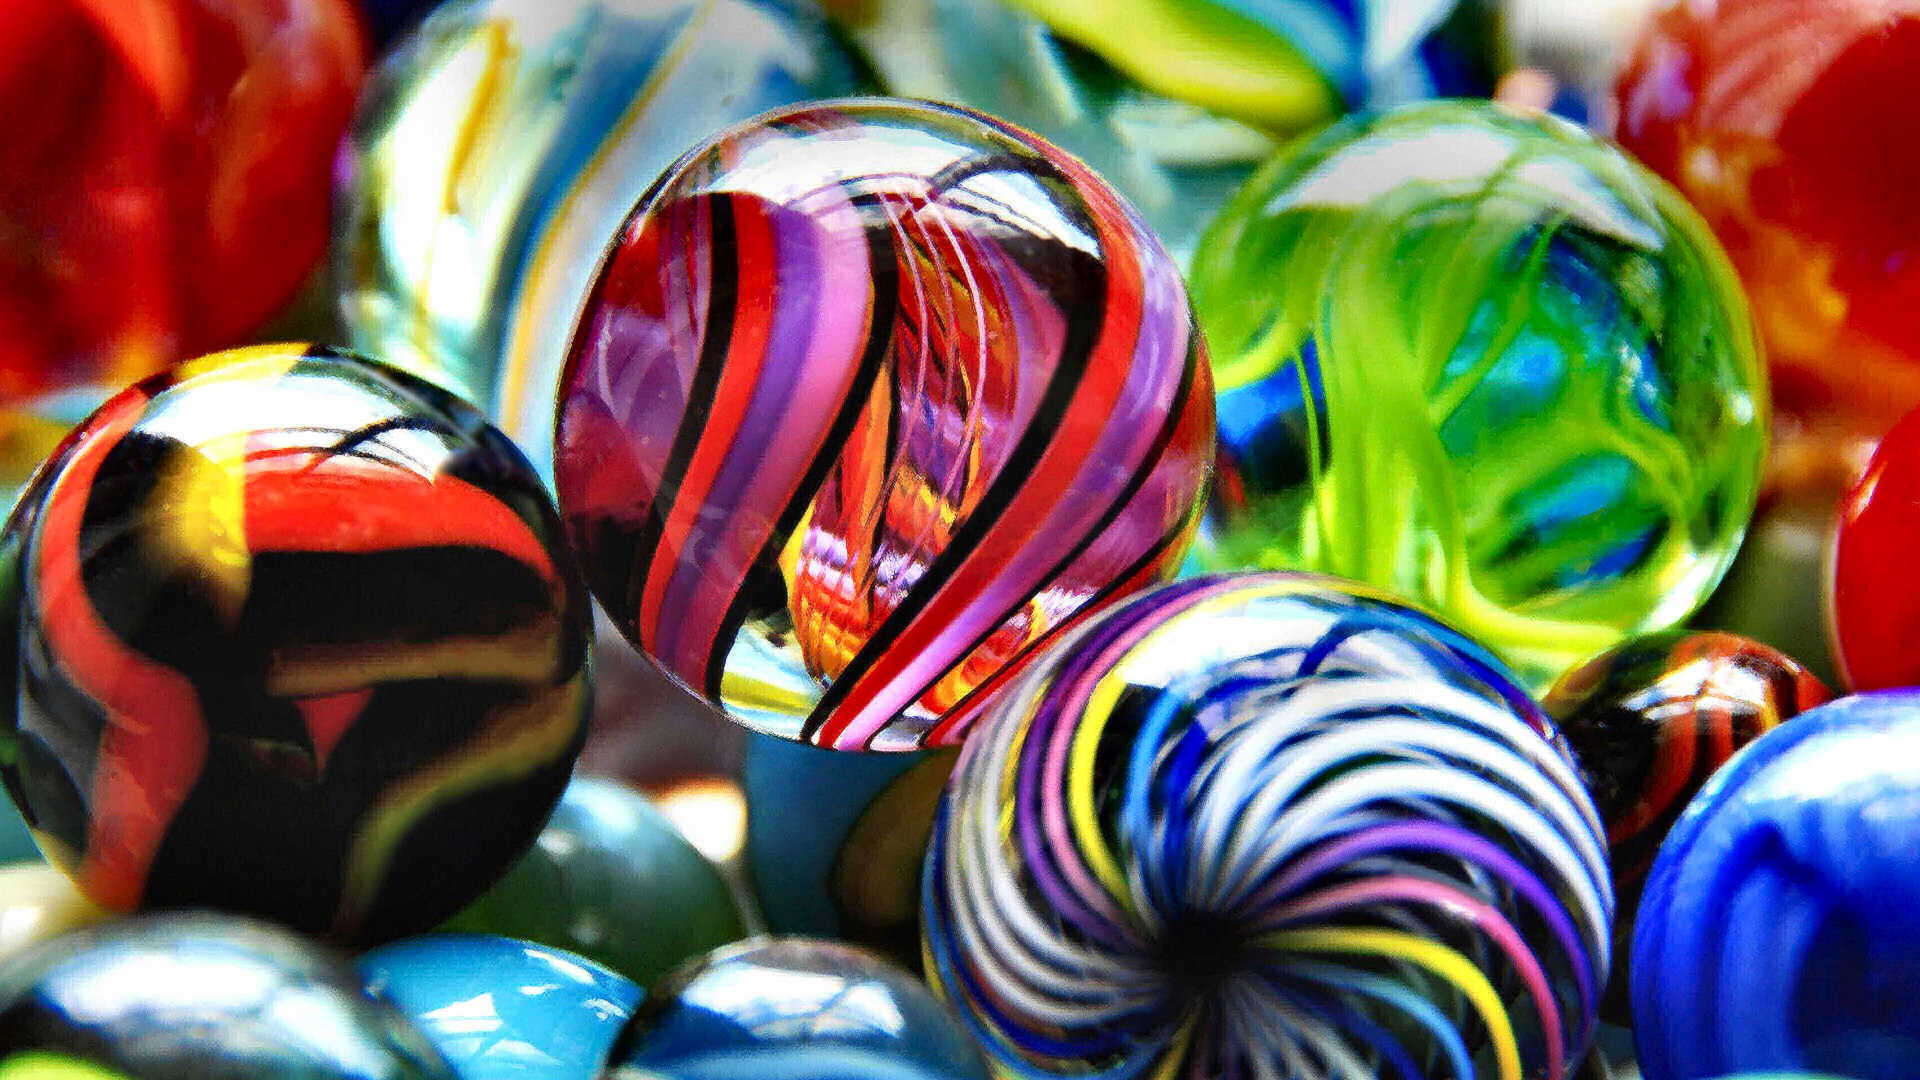 Wir sehen einen kleinen Ausschnitt aus einer Sammlung von wunderschönen Glasmurmeln. Sie strahlen in tollen Farben und spiralförmigen Mustern. Man verspürt den Wunsch, eine davon in die Hand zu nehmen.